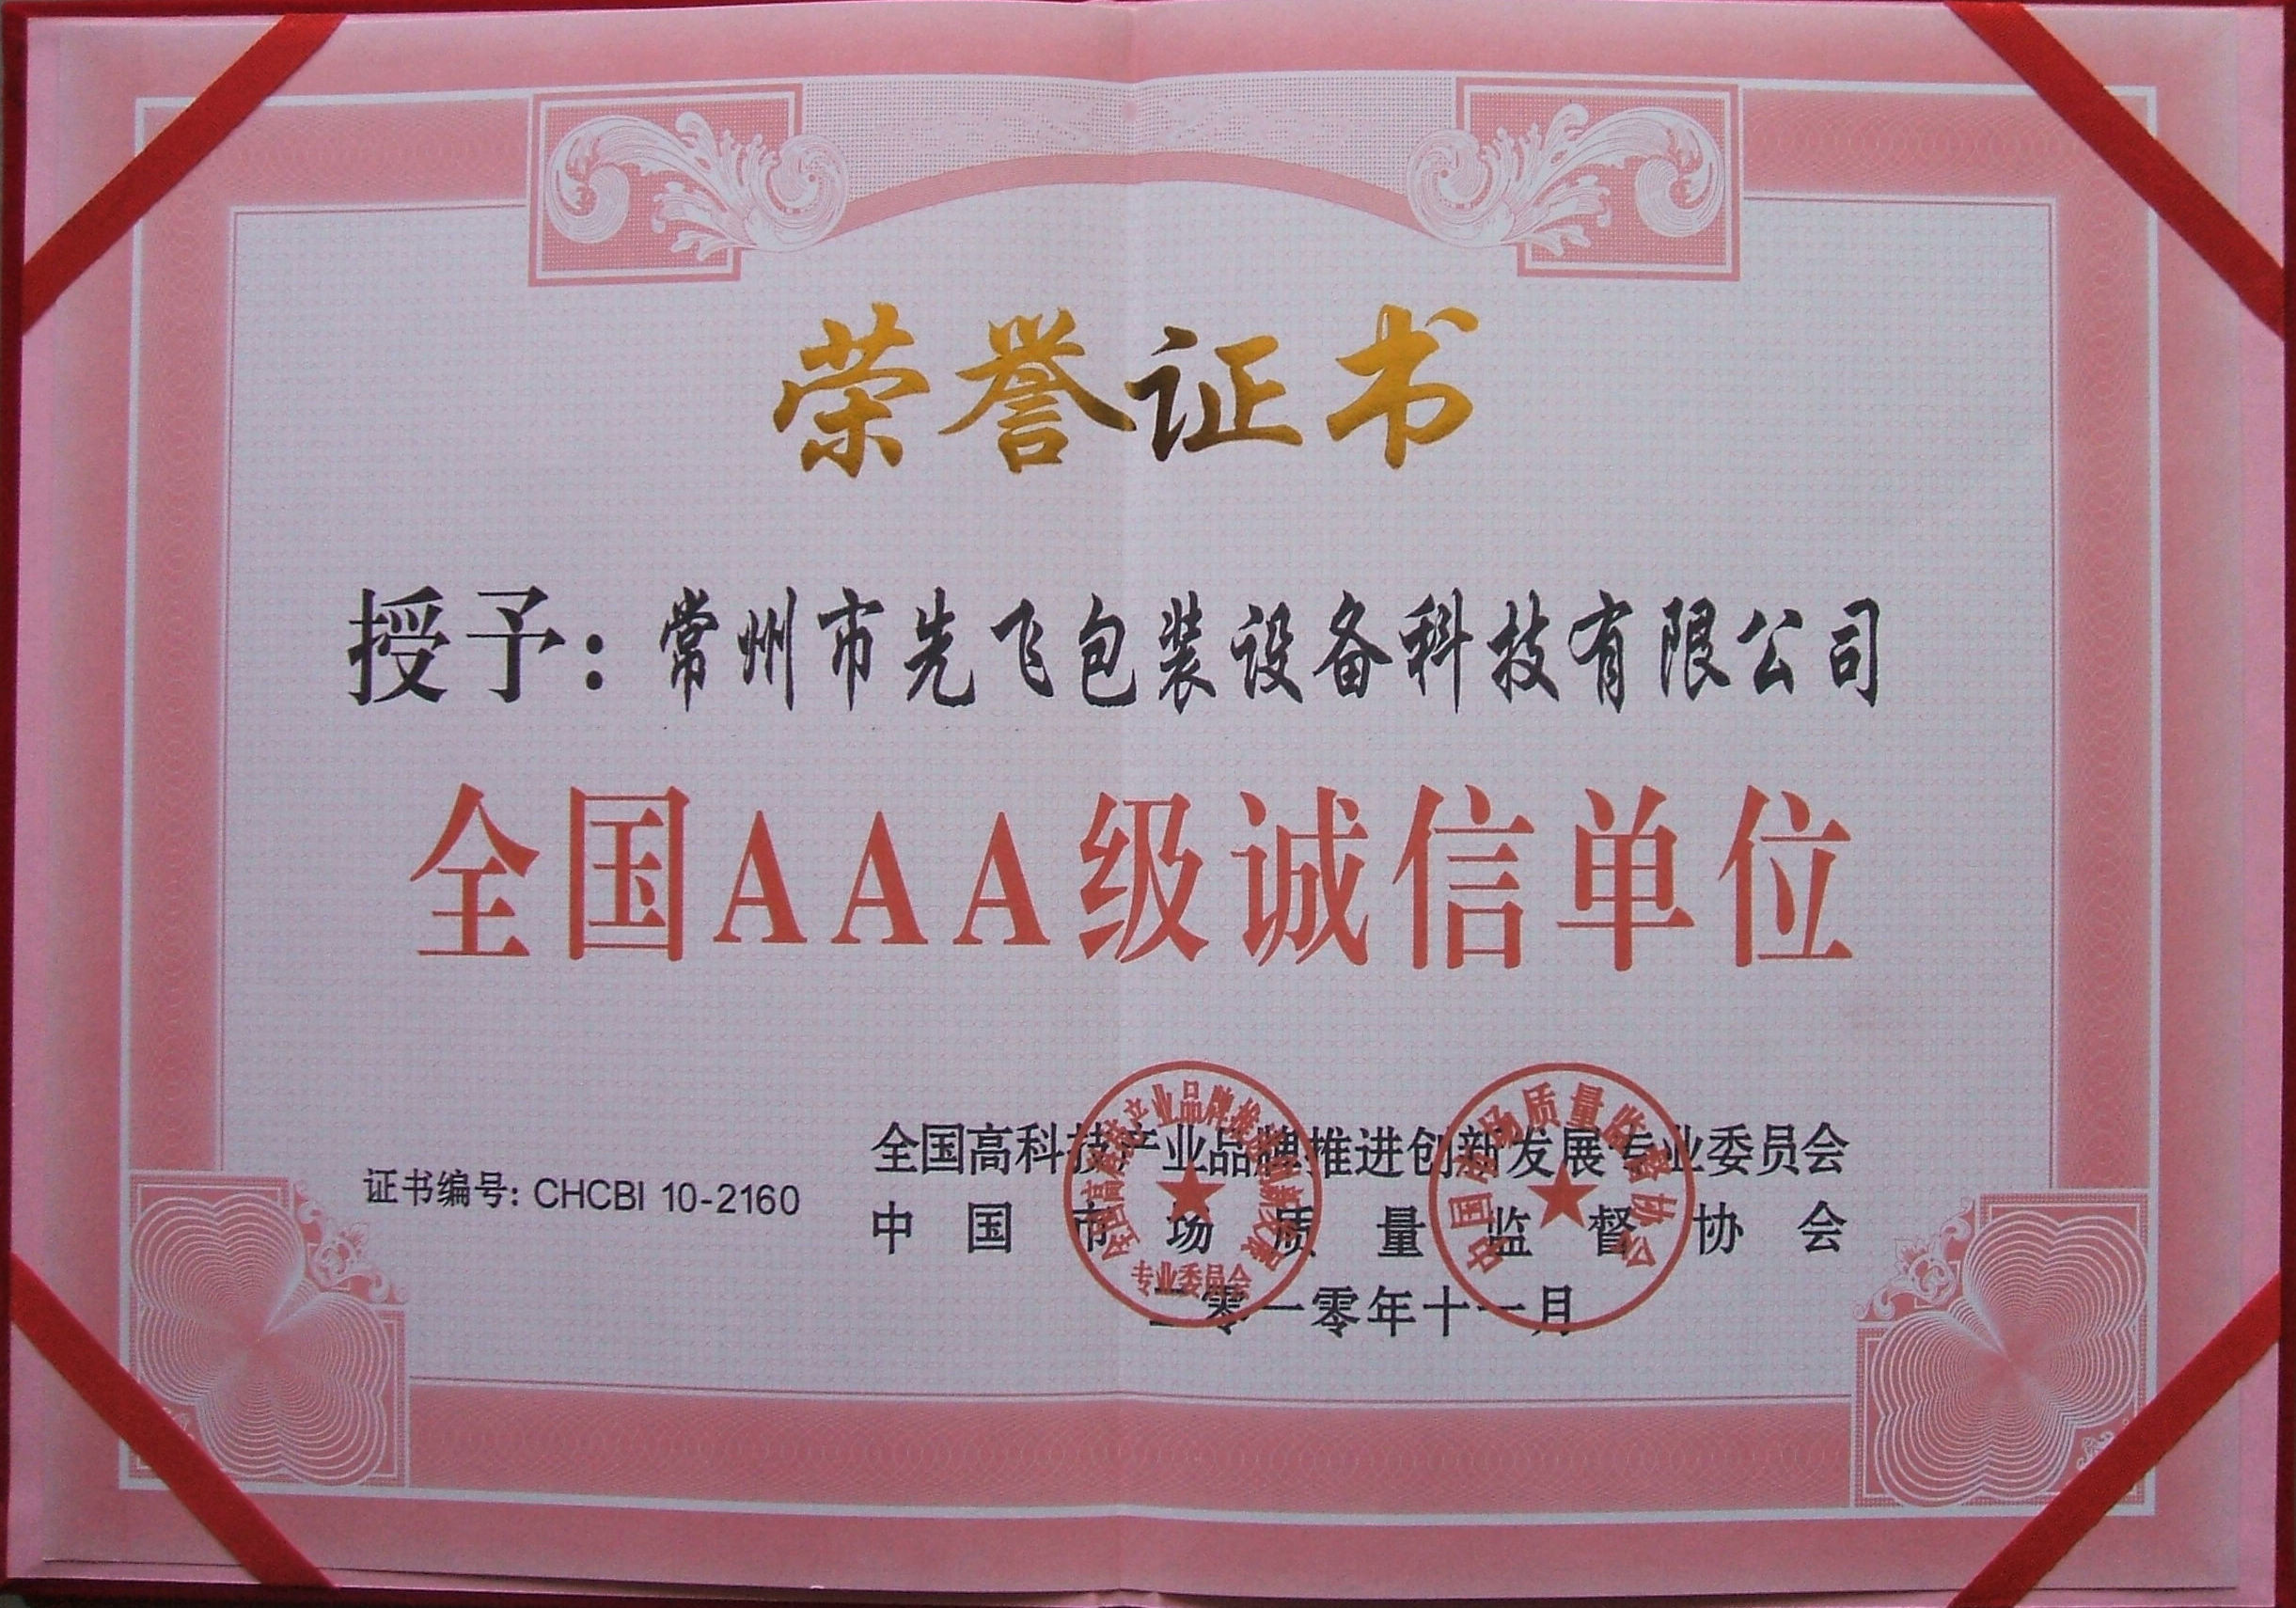 Chine Changzhou Xianfei Packing Equipment Technology Co., Ltd. Certifications